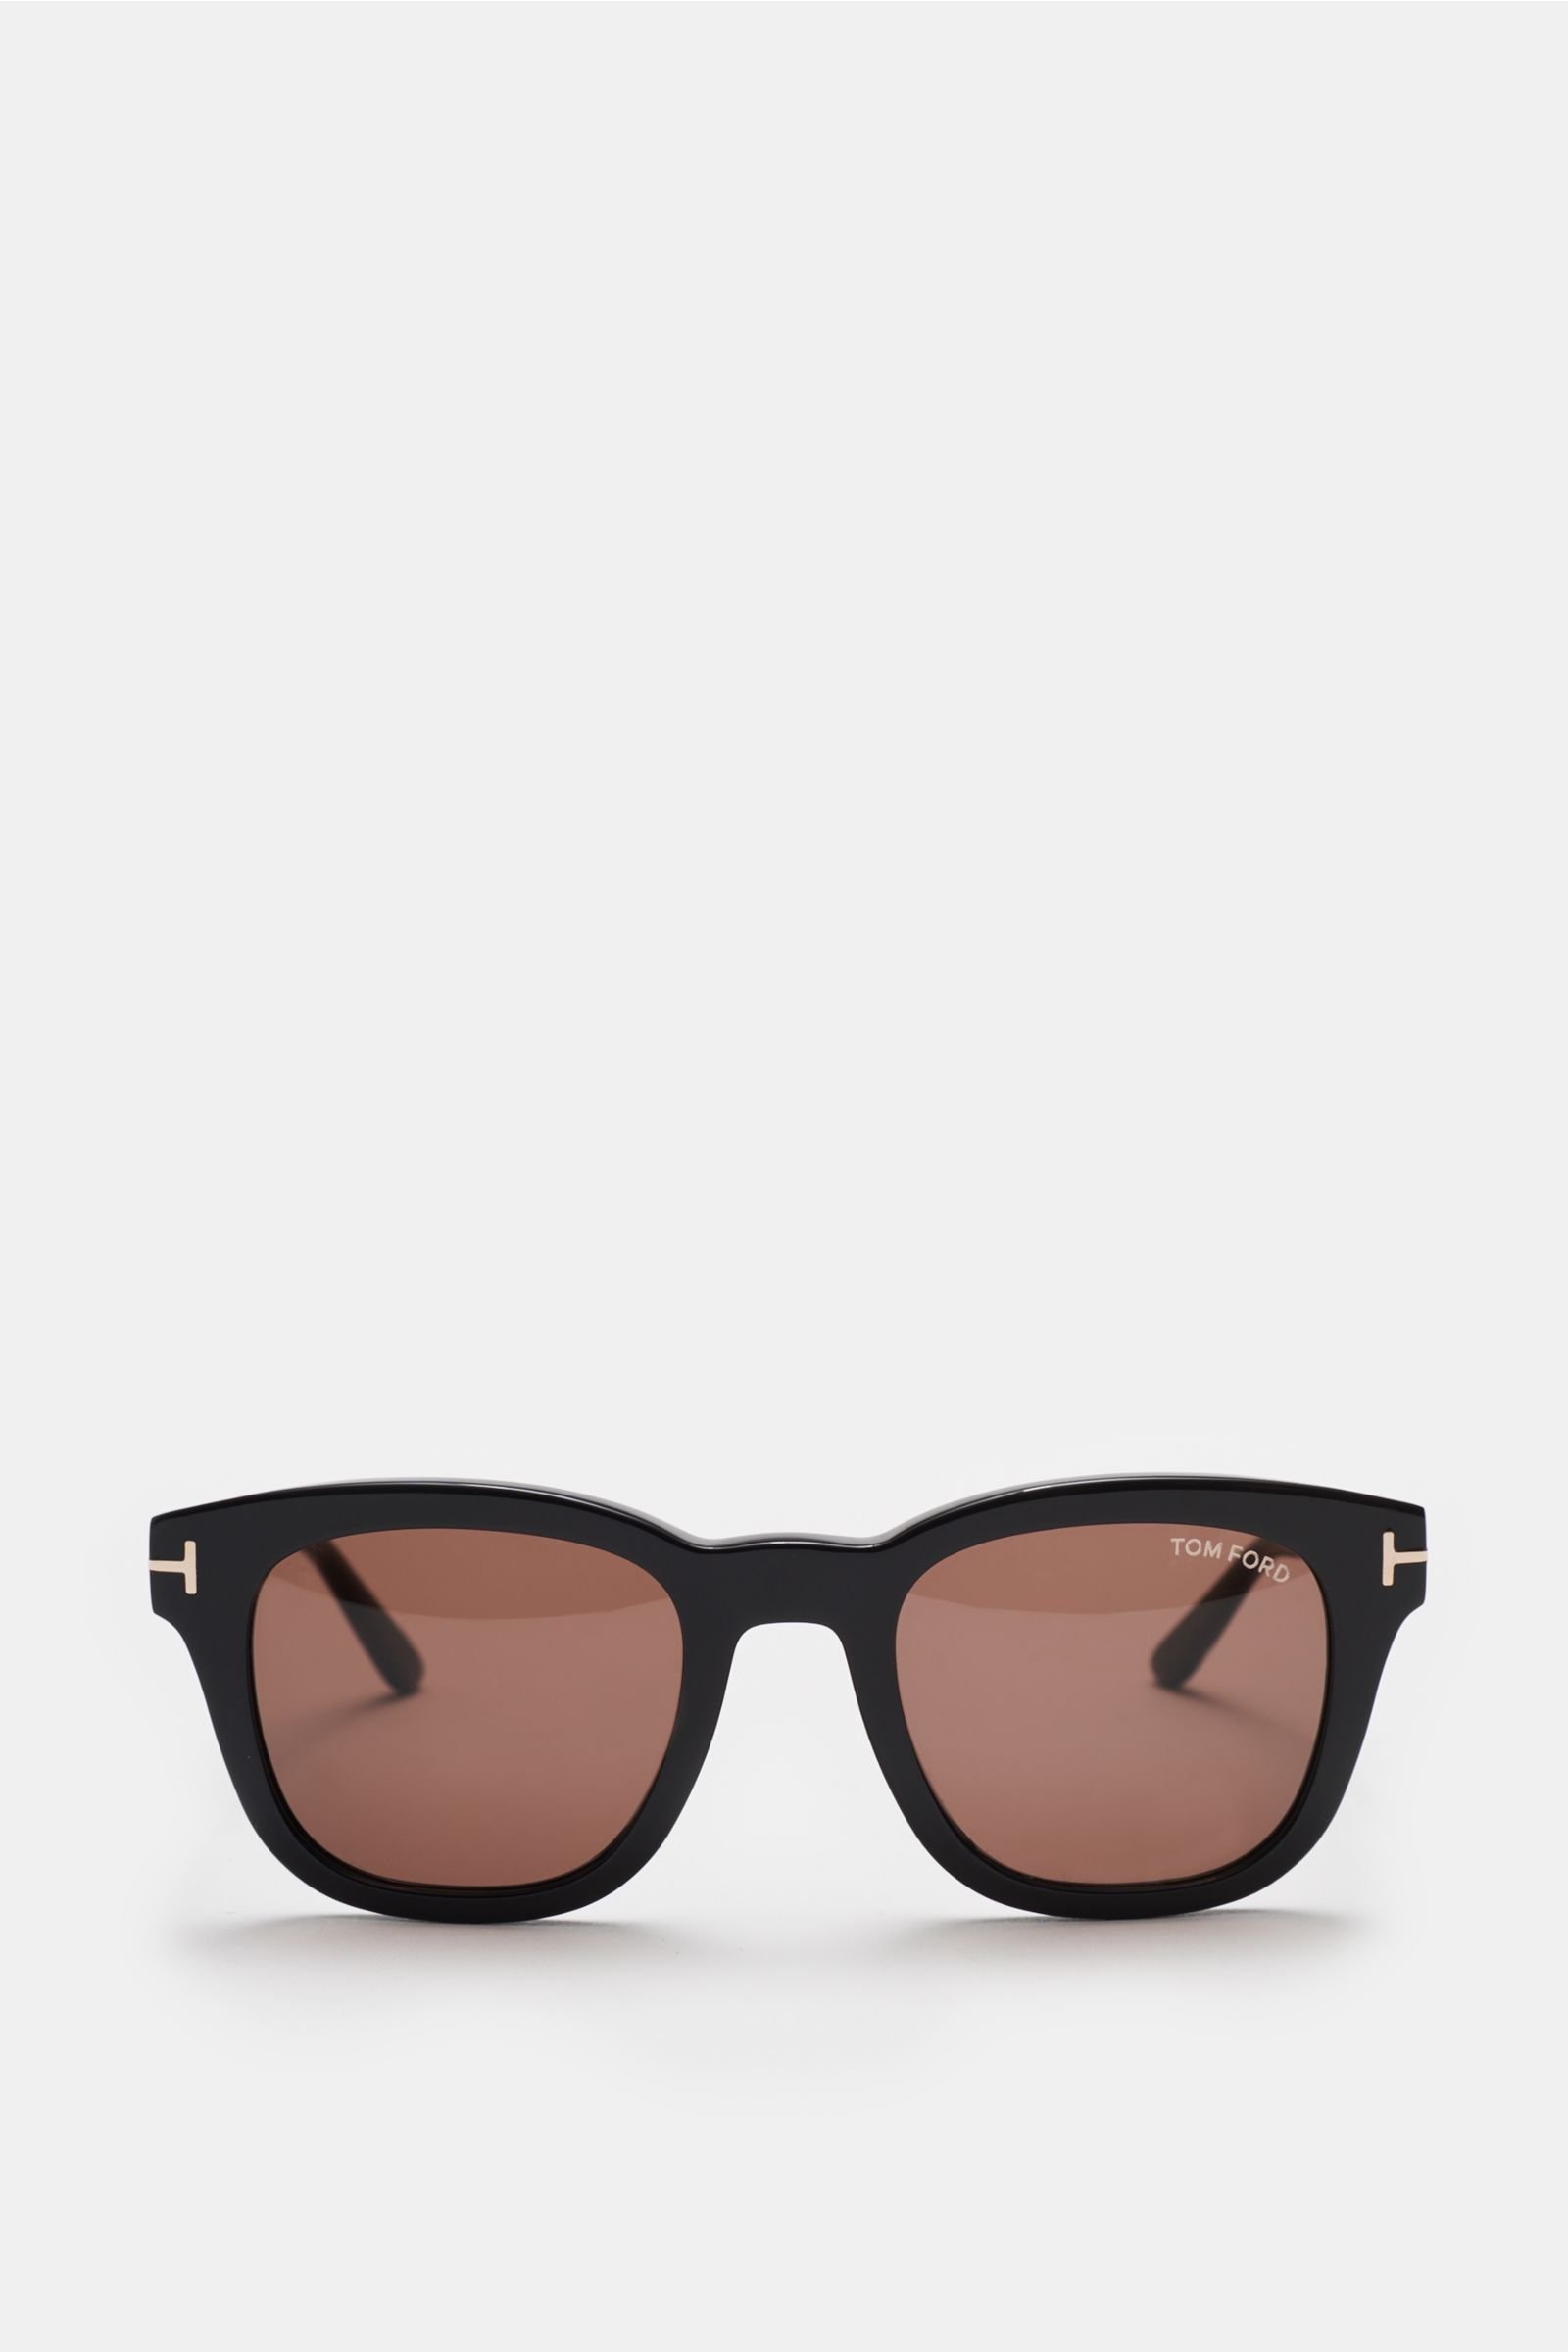 Sonnenbrille 'Eugenio' schwarz/braun